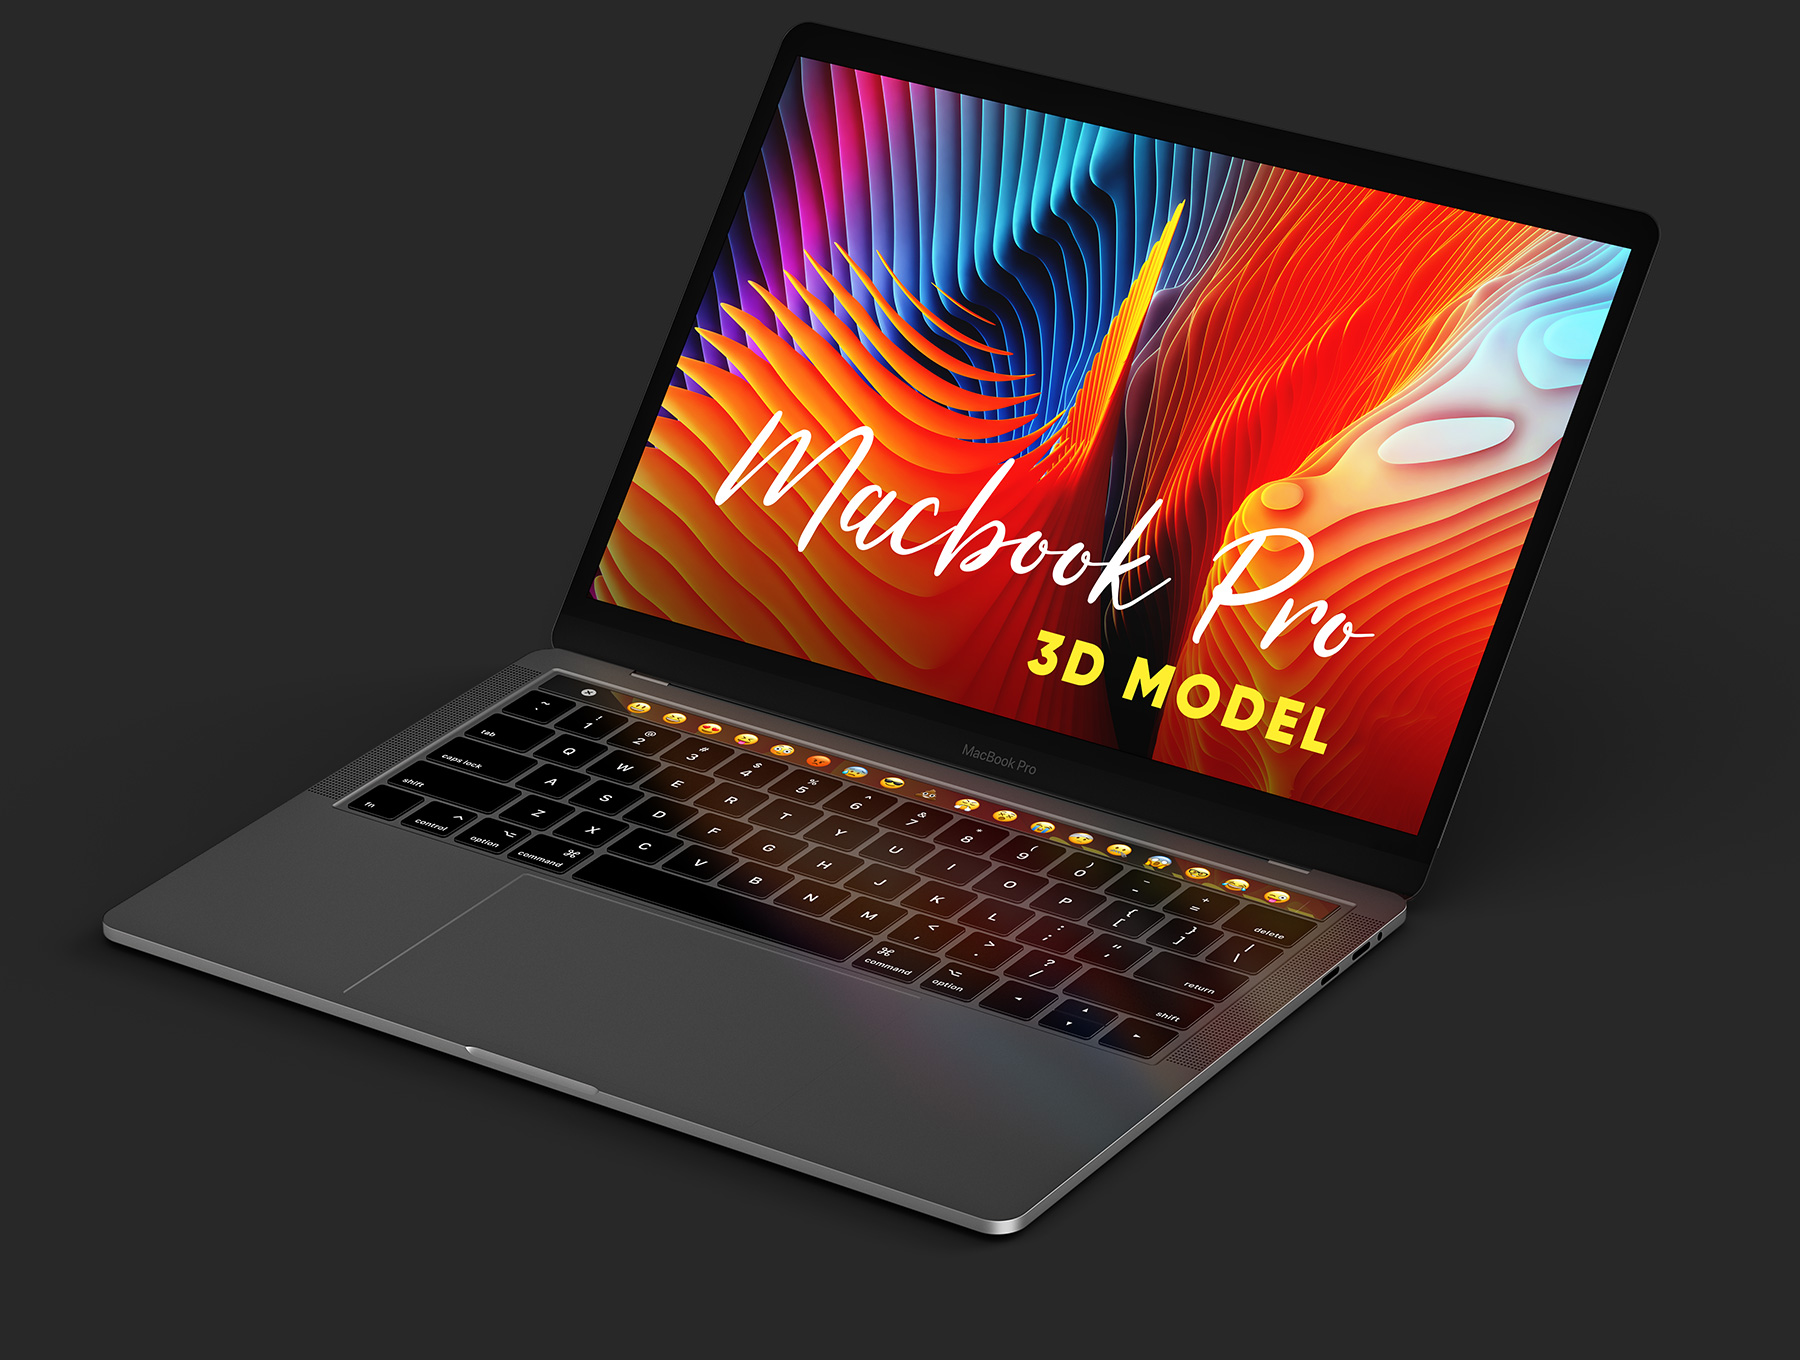 新款MacBook Pro c4d模型源文件设计素材下载MacBook Pro 3D Model